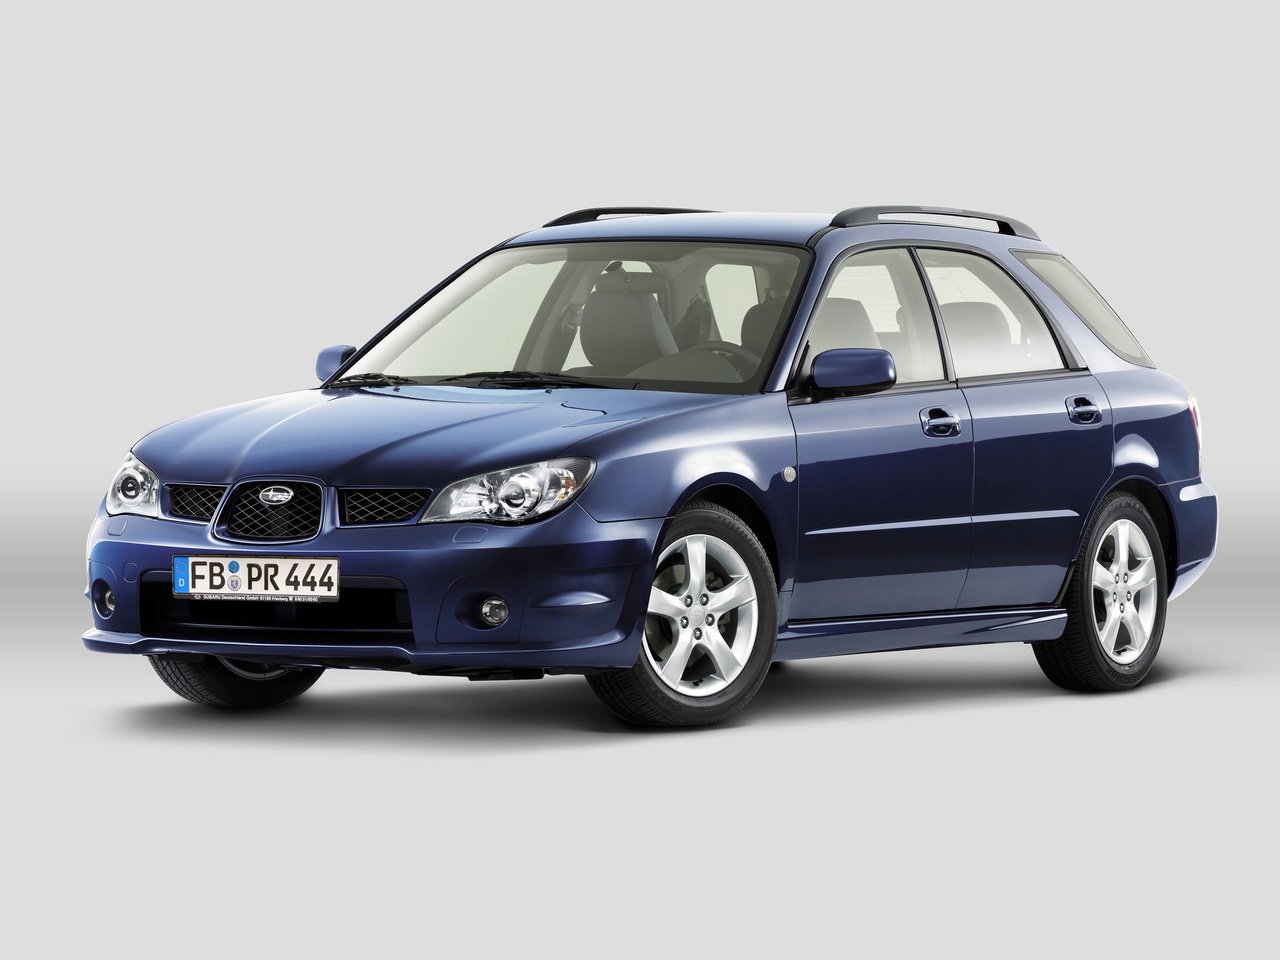 Расход газа шести комплектаций универсала пять дверей Subaru Impreza. Разница стоимости заправки газом и бензином. Автономный пробег до и после установки ГБО.